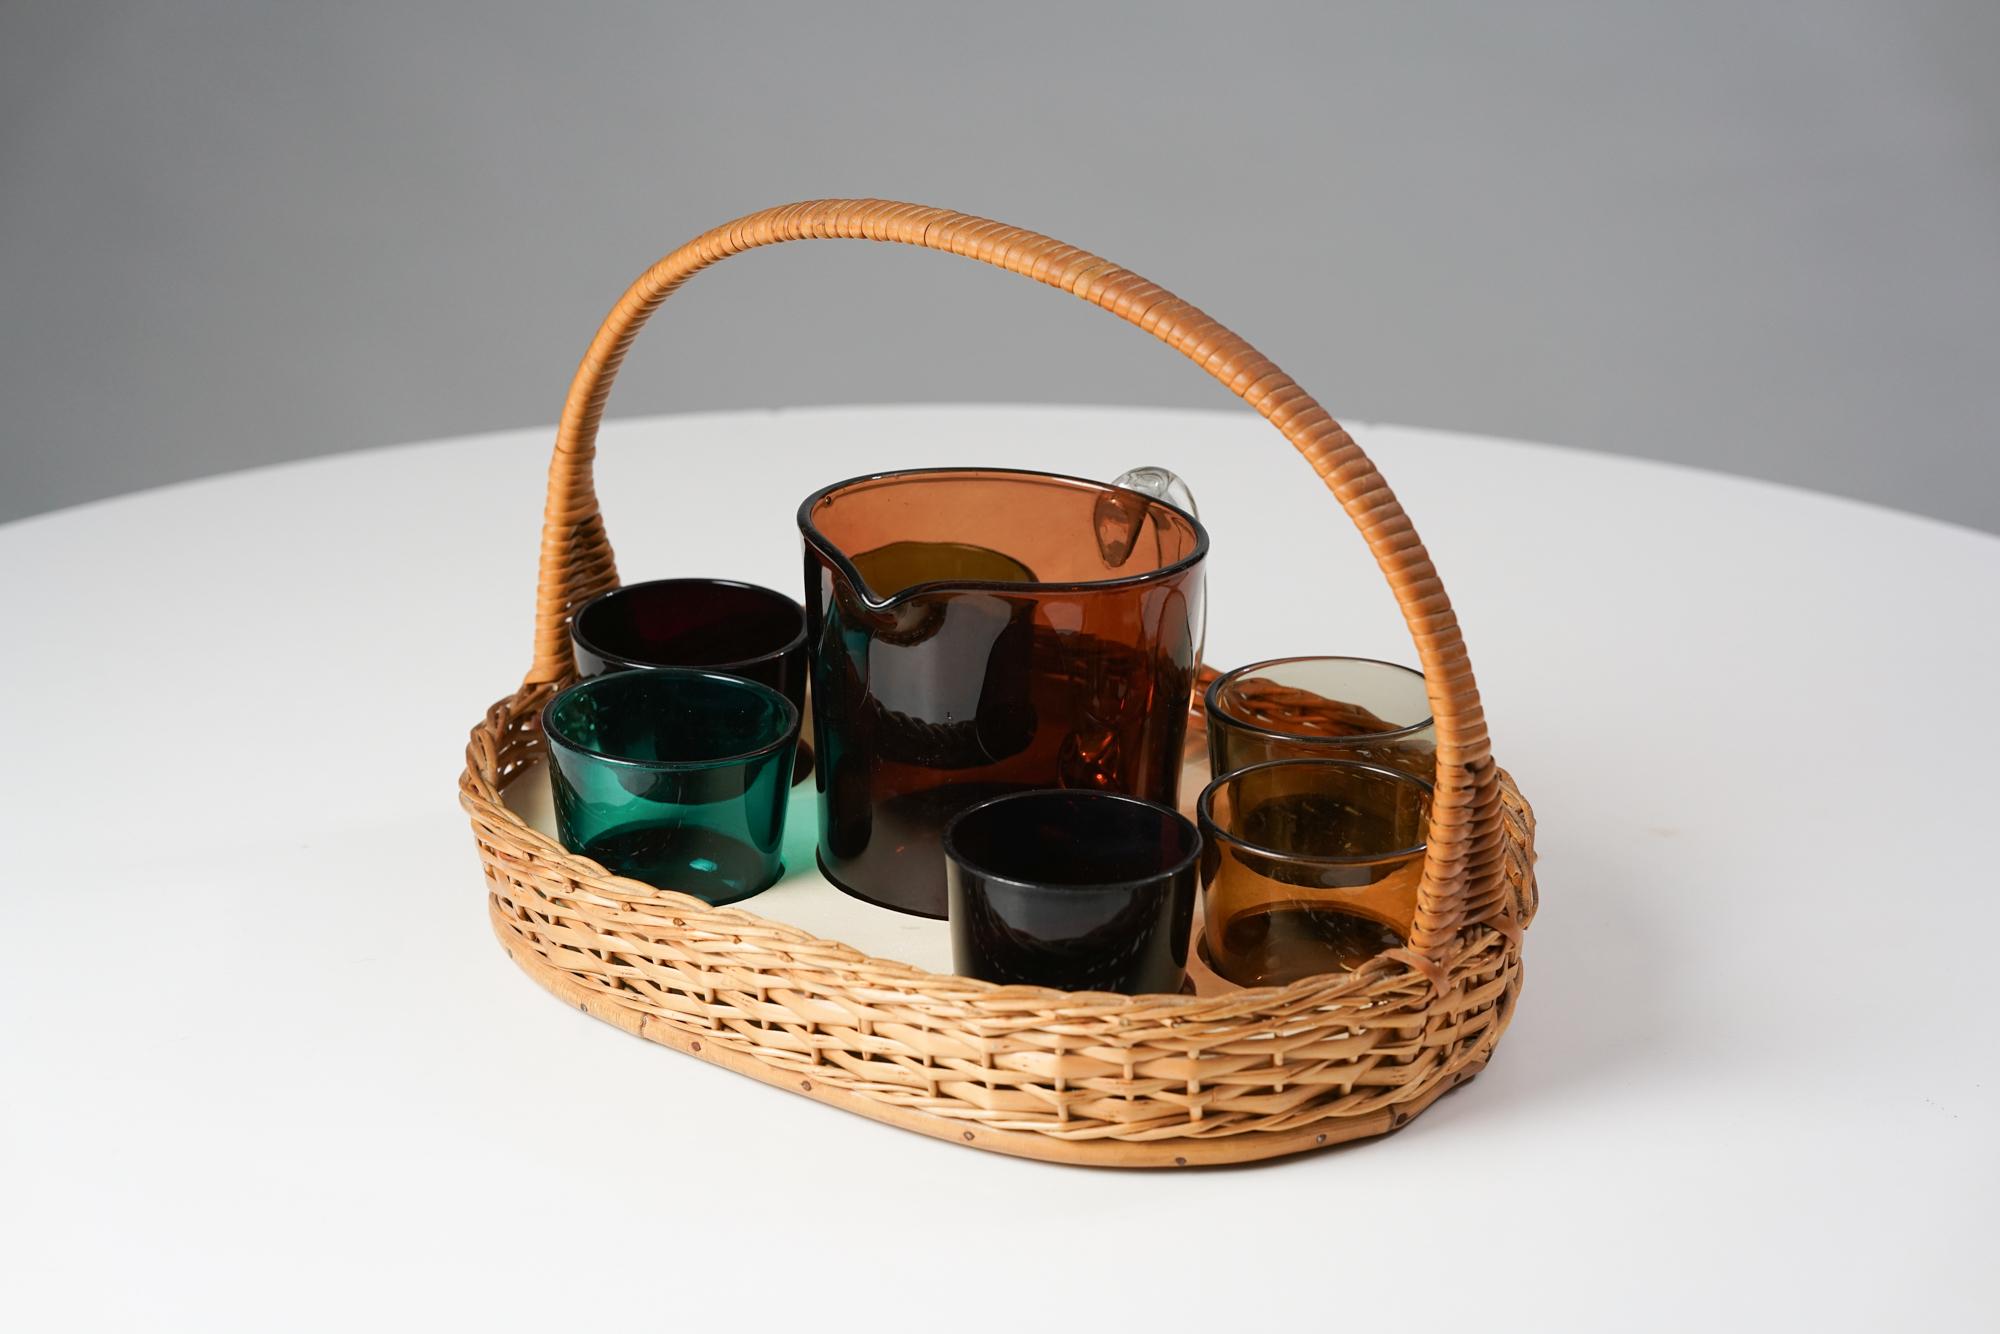 Juice-Set von Kaj Franck für Nuutajärvi Notsjö aus den 1950er Jahren. Entworfen im Jahr 1954. Das Set besteht aus einem Weidenkorb mit rattanumwickeltem Griff, sechs Gläsern und einer Vase. Verschiedene Farben auf den Gläsern. Guter Vintage-Zustand,